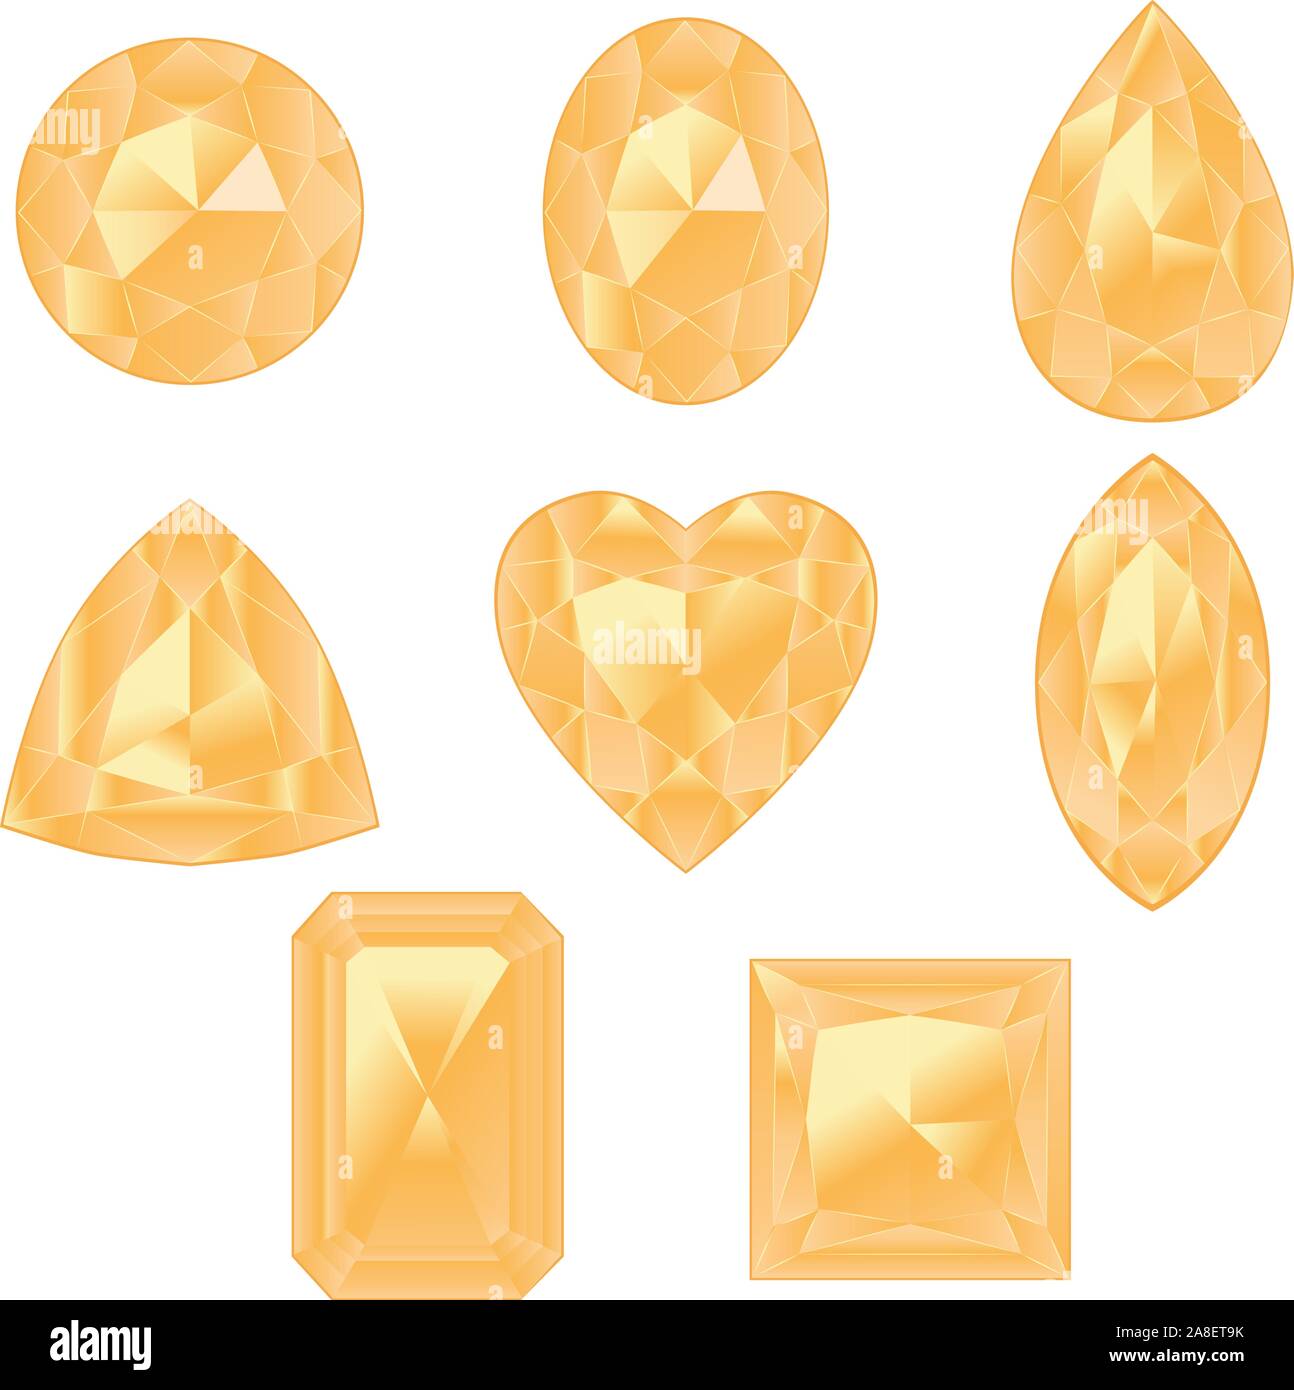 Kostbare Edelsteine, Kristalle von gelber Farbe in verschiedenen Formen Kollektion. Stock Vektor